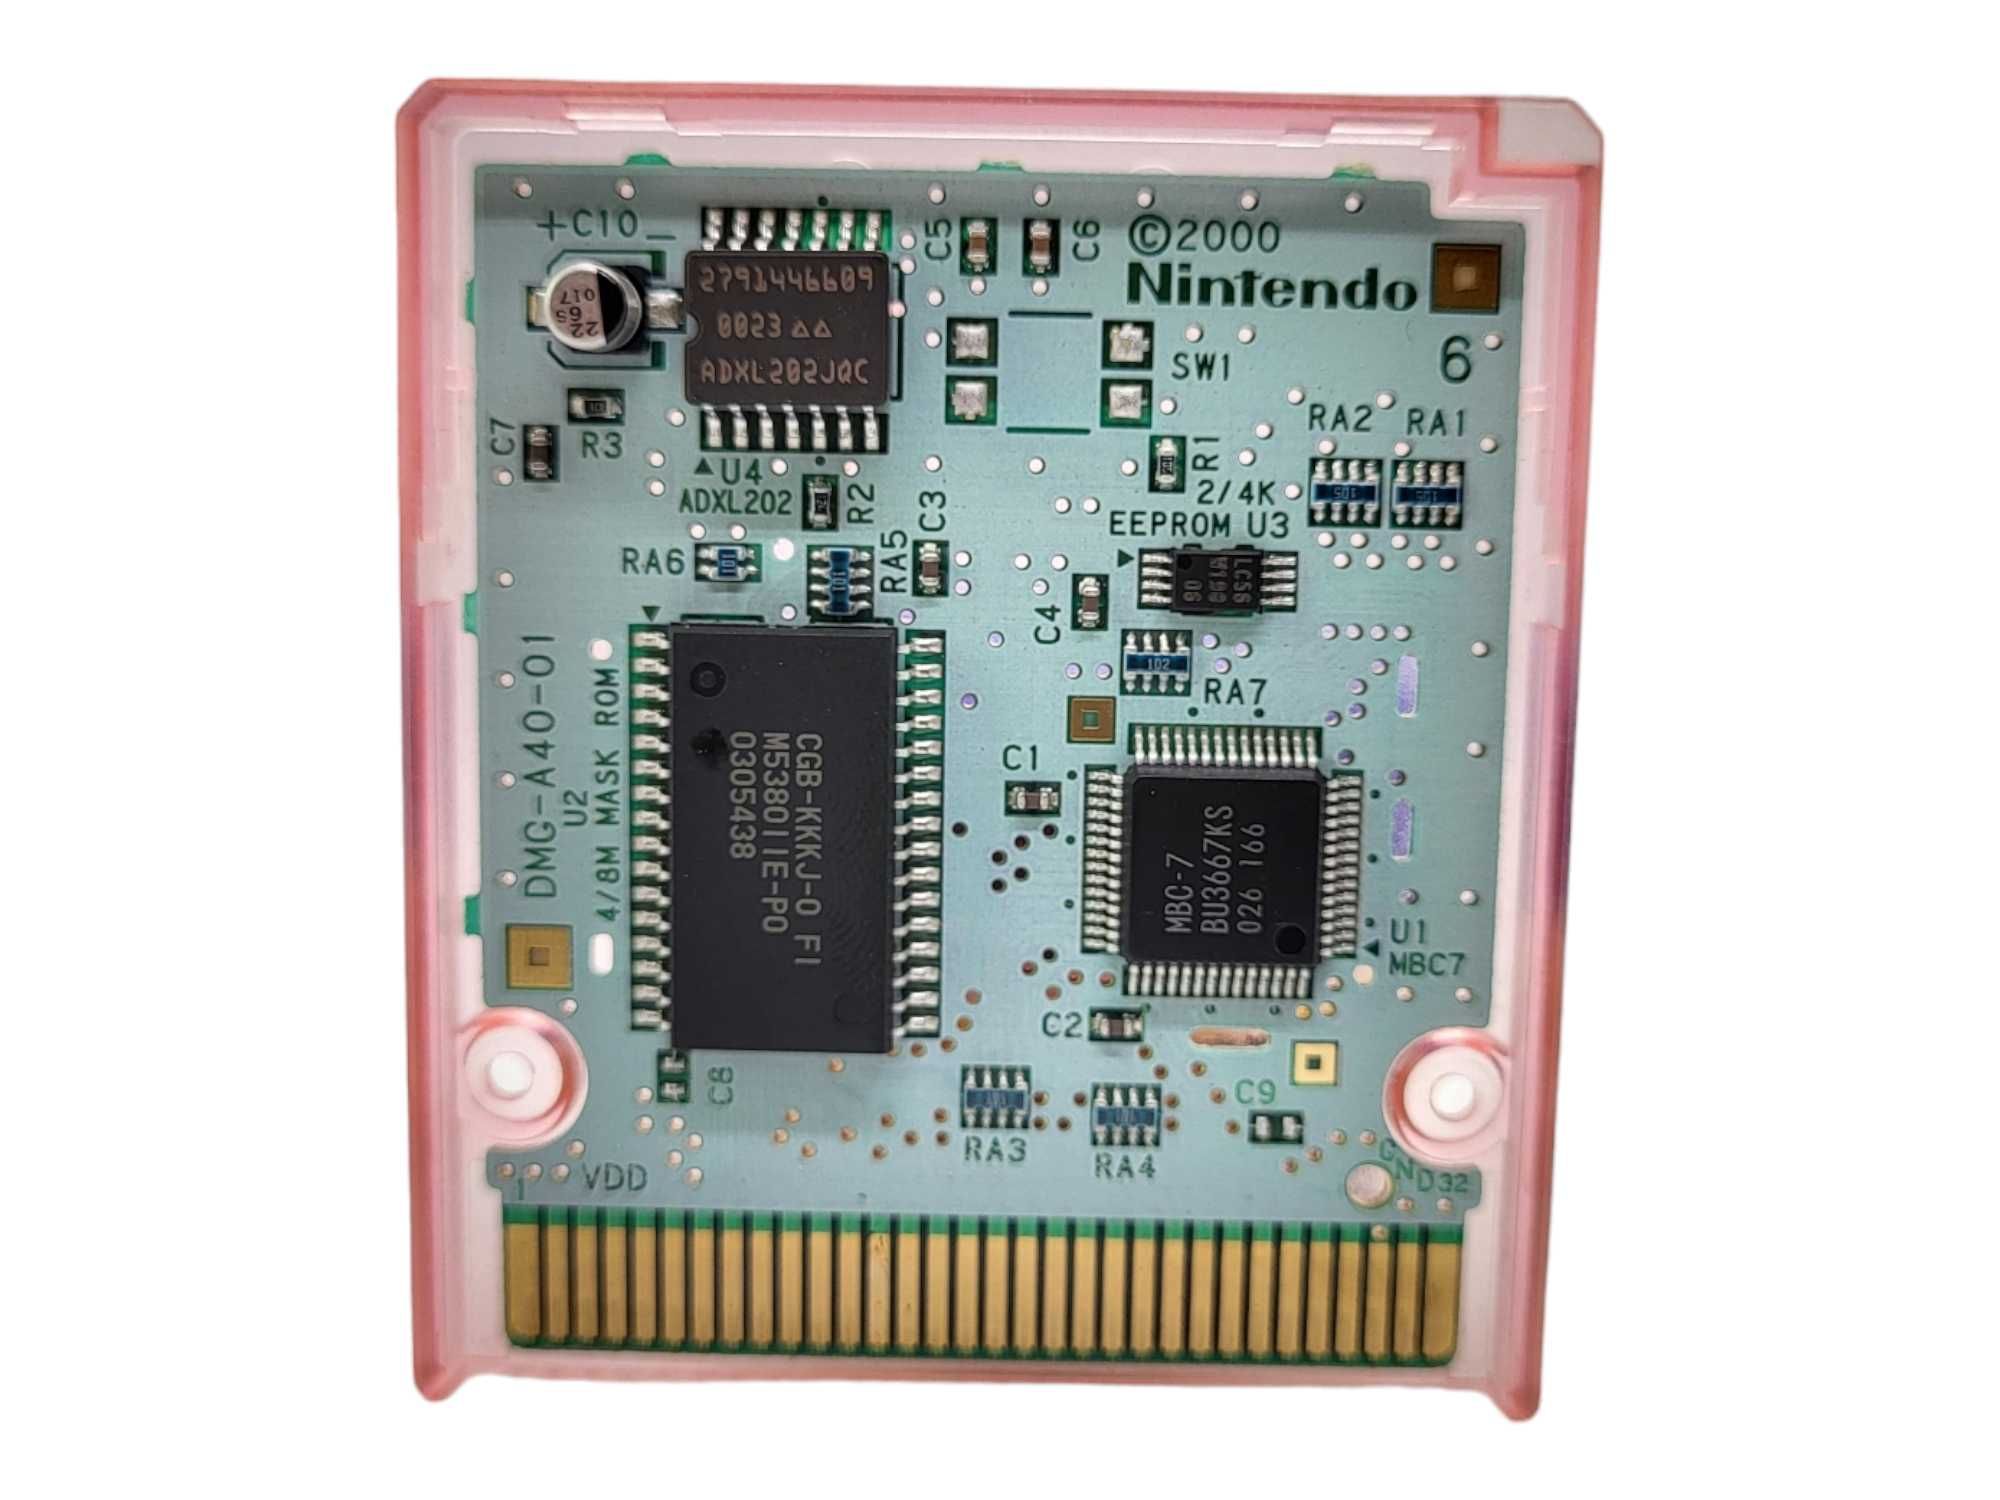 Koro Koro Kirby Tilt "n" Tumble Game Boy Gameboy Color